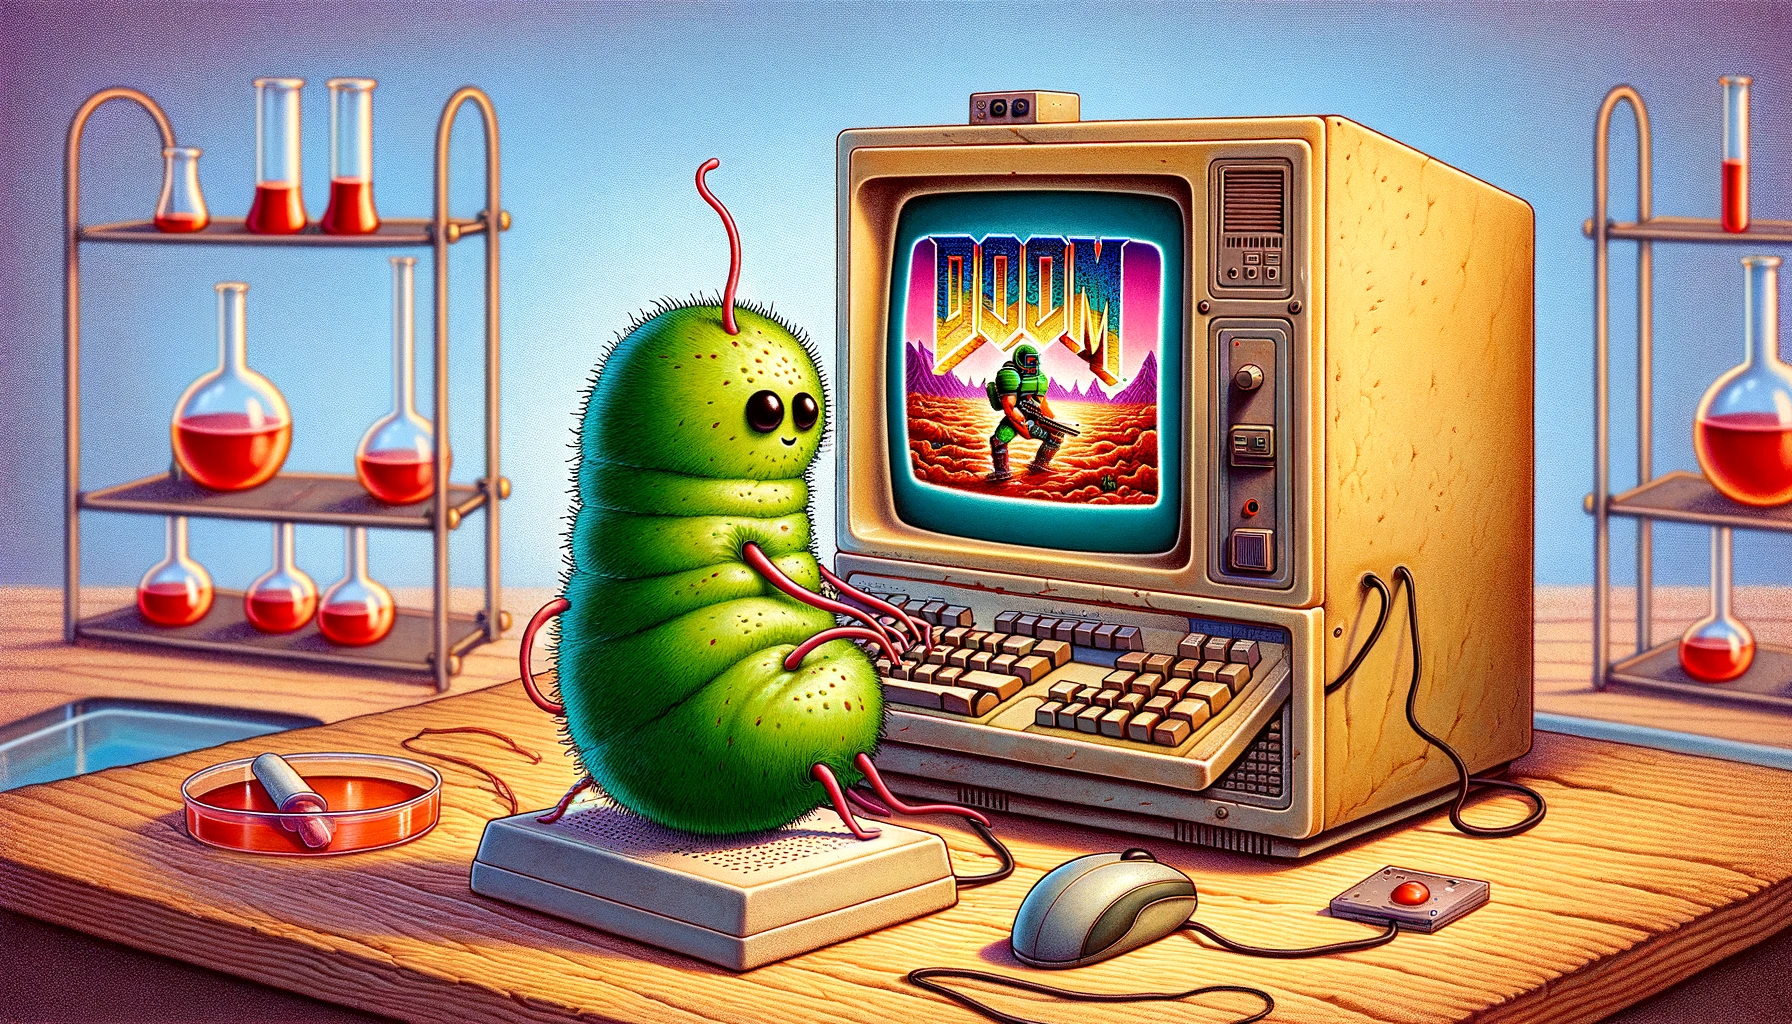 Animowany zielony robak siedzący przed starym komputerem z grą "Doom" na ekranie, w tle półka z probówkami.